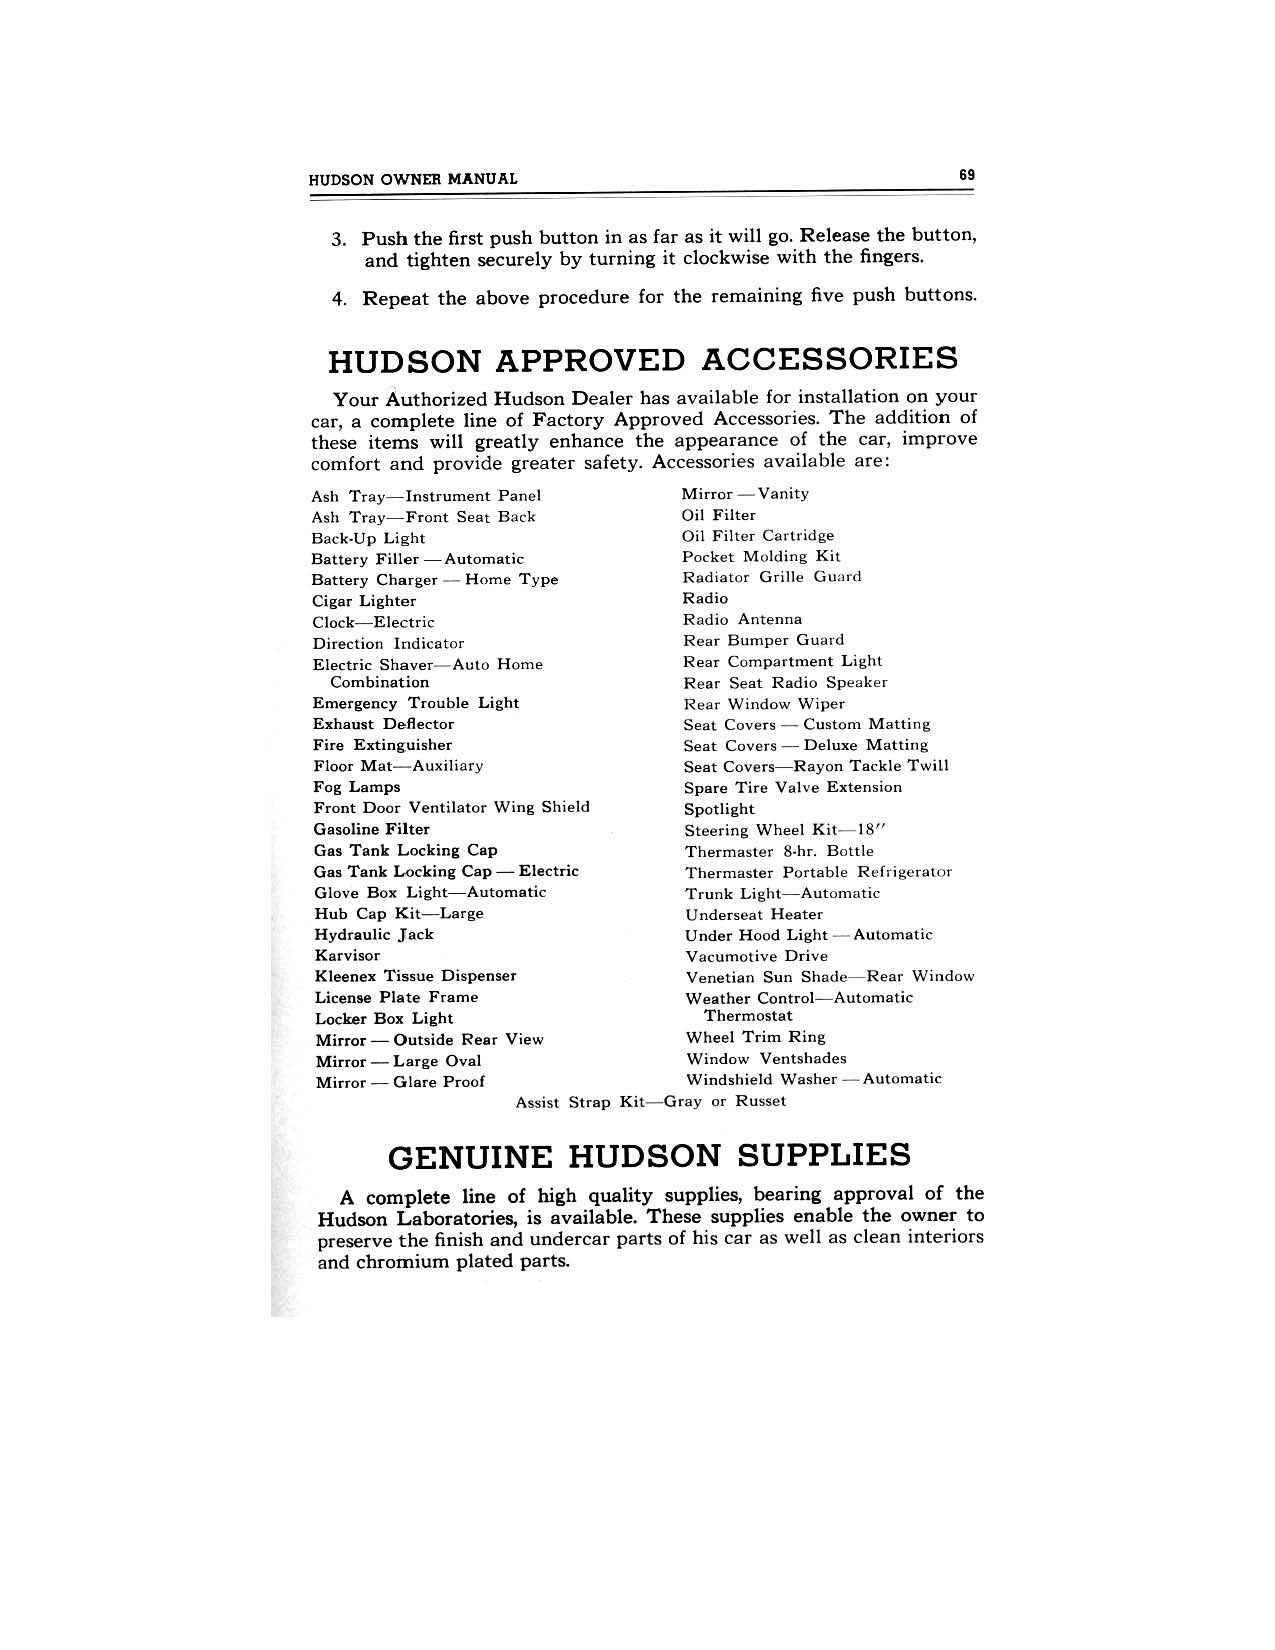 1949 Hudson Owners Manual-71